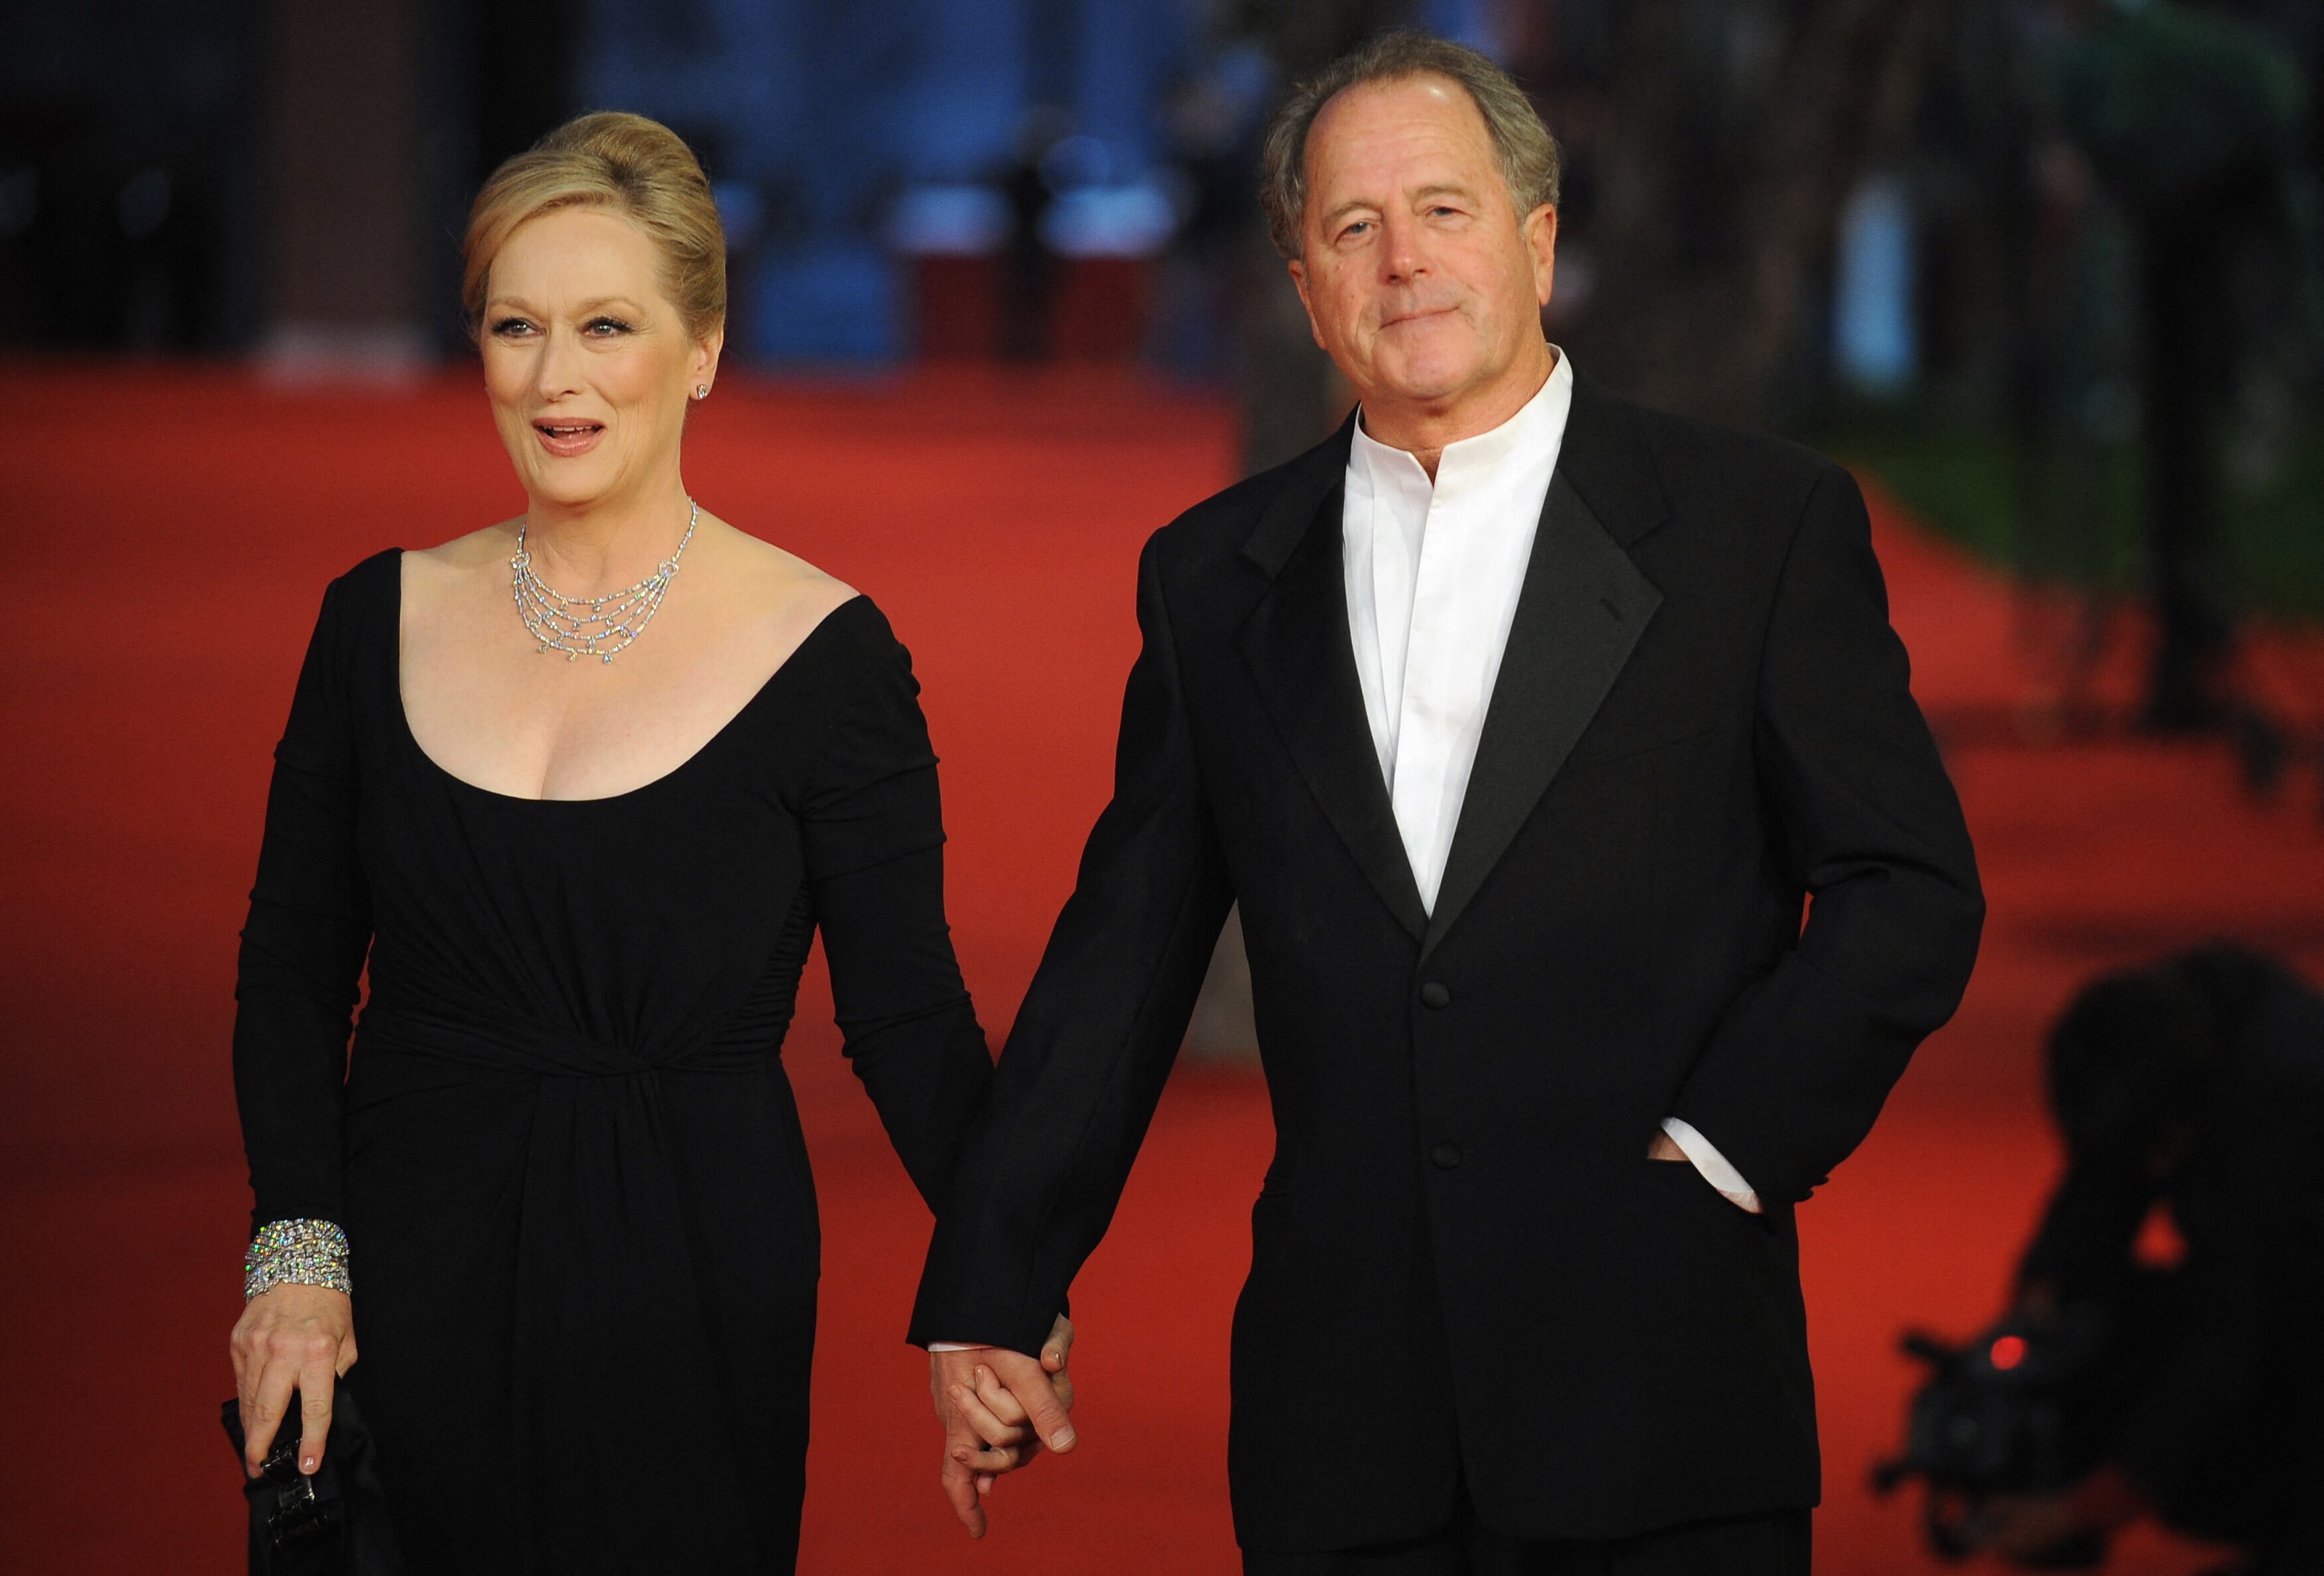 La historia de amor entre Meryl Streep y Don Gummer